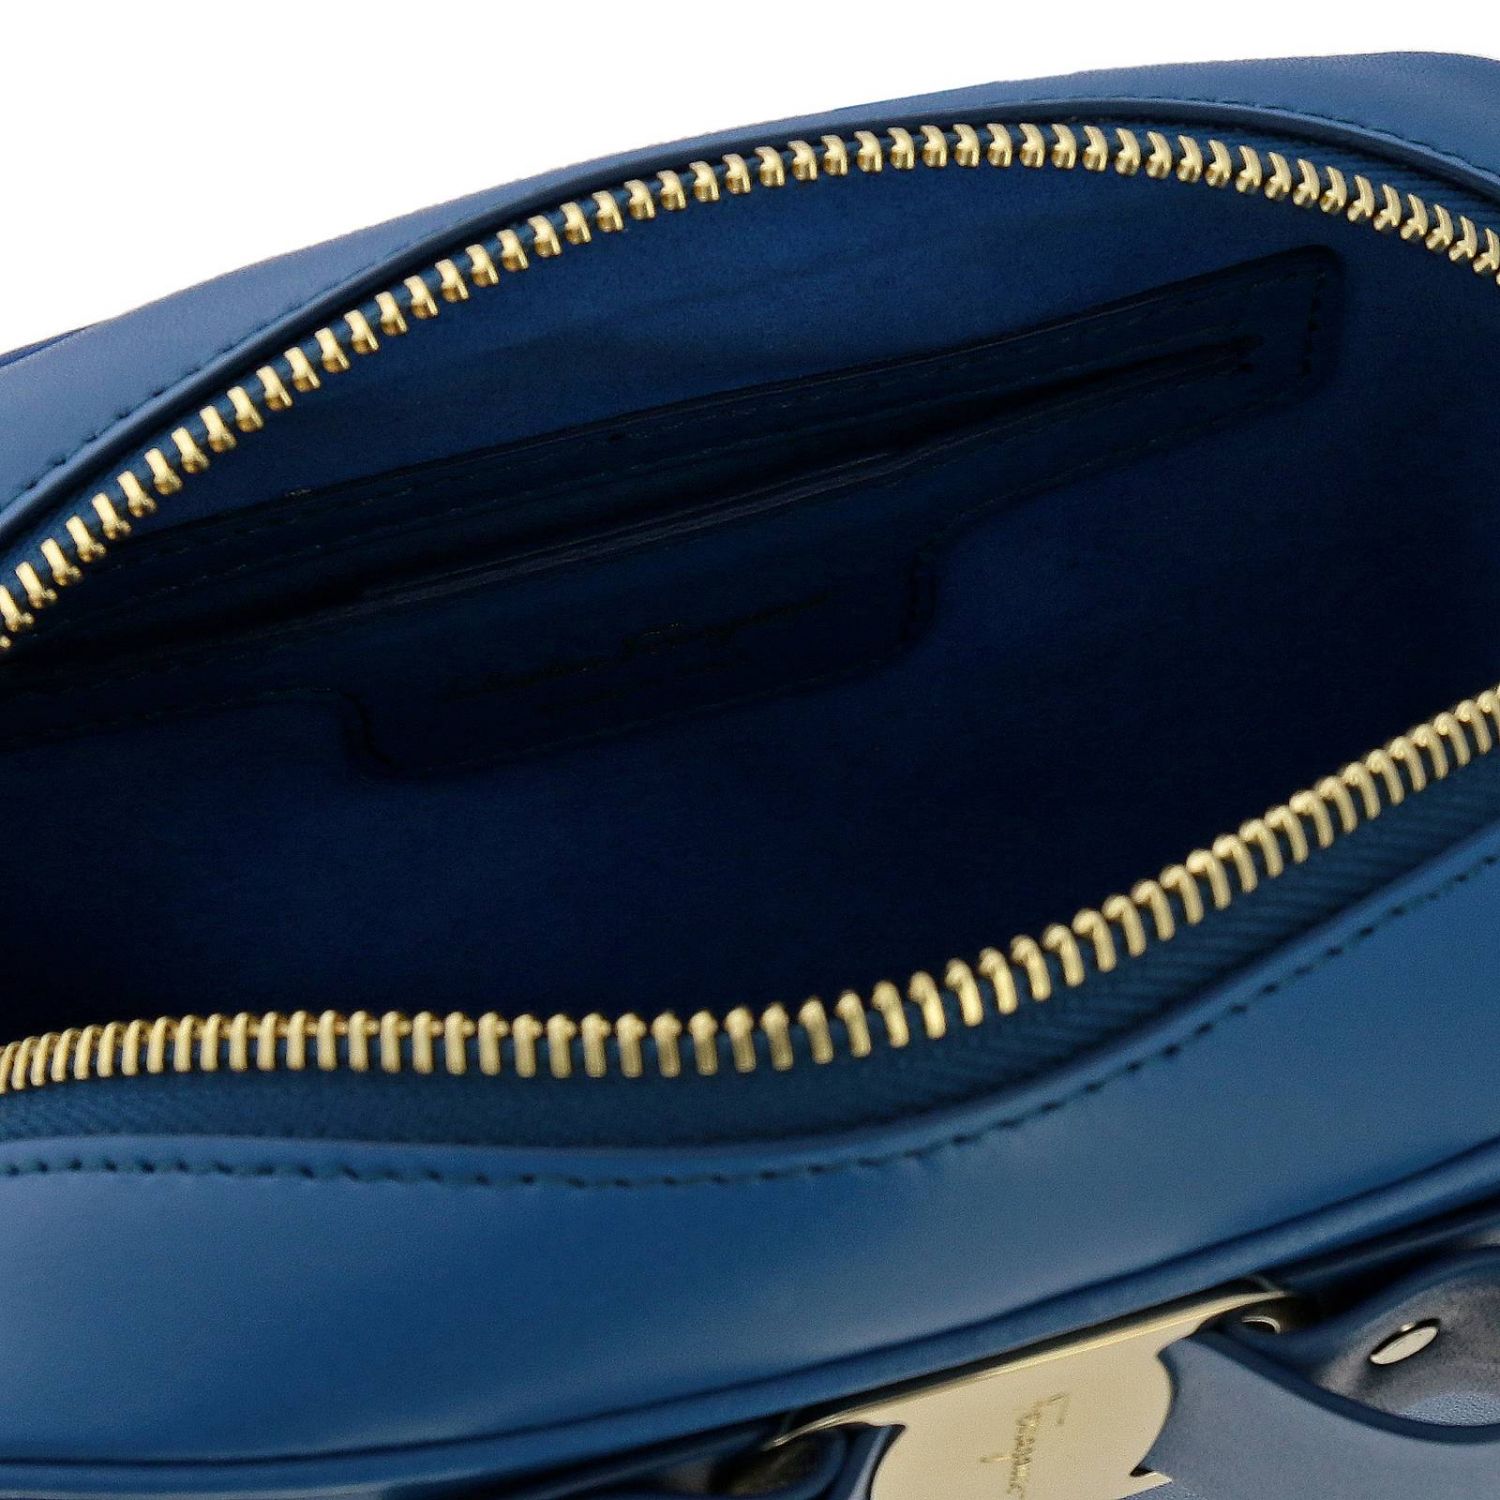 Salvatore Ferragamo Outlet: Shoulder bag women - Gnawed Blue | Mini Bag ...